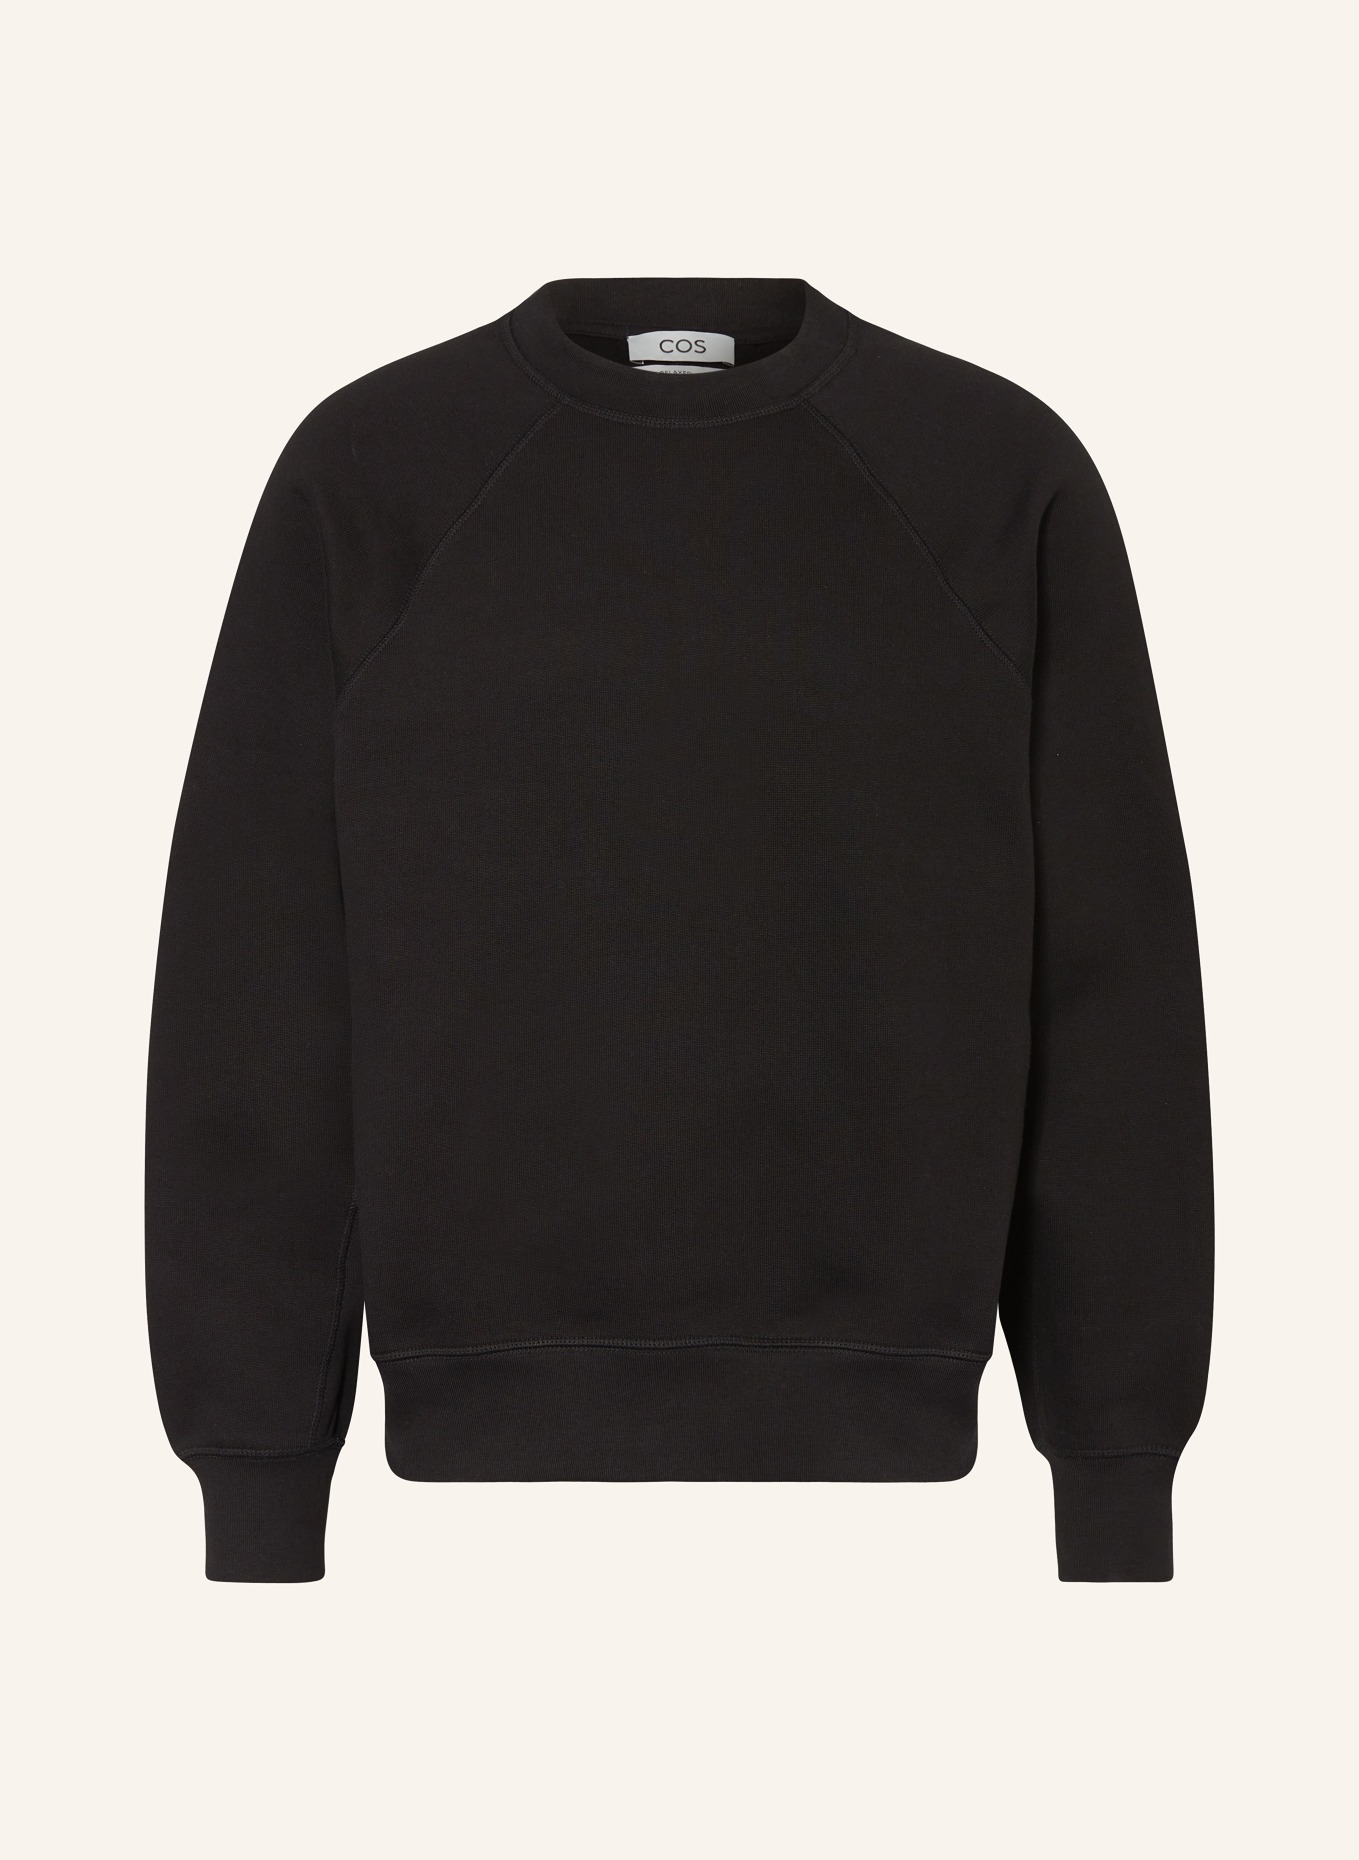 COS Sweatshirt, Color: BLACK (Image 1)